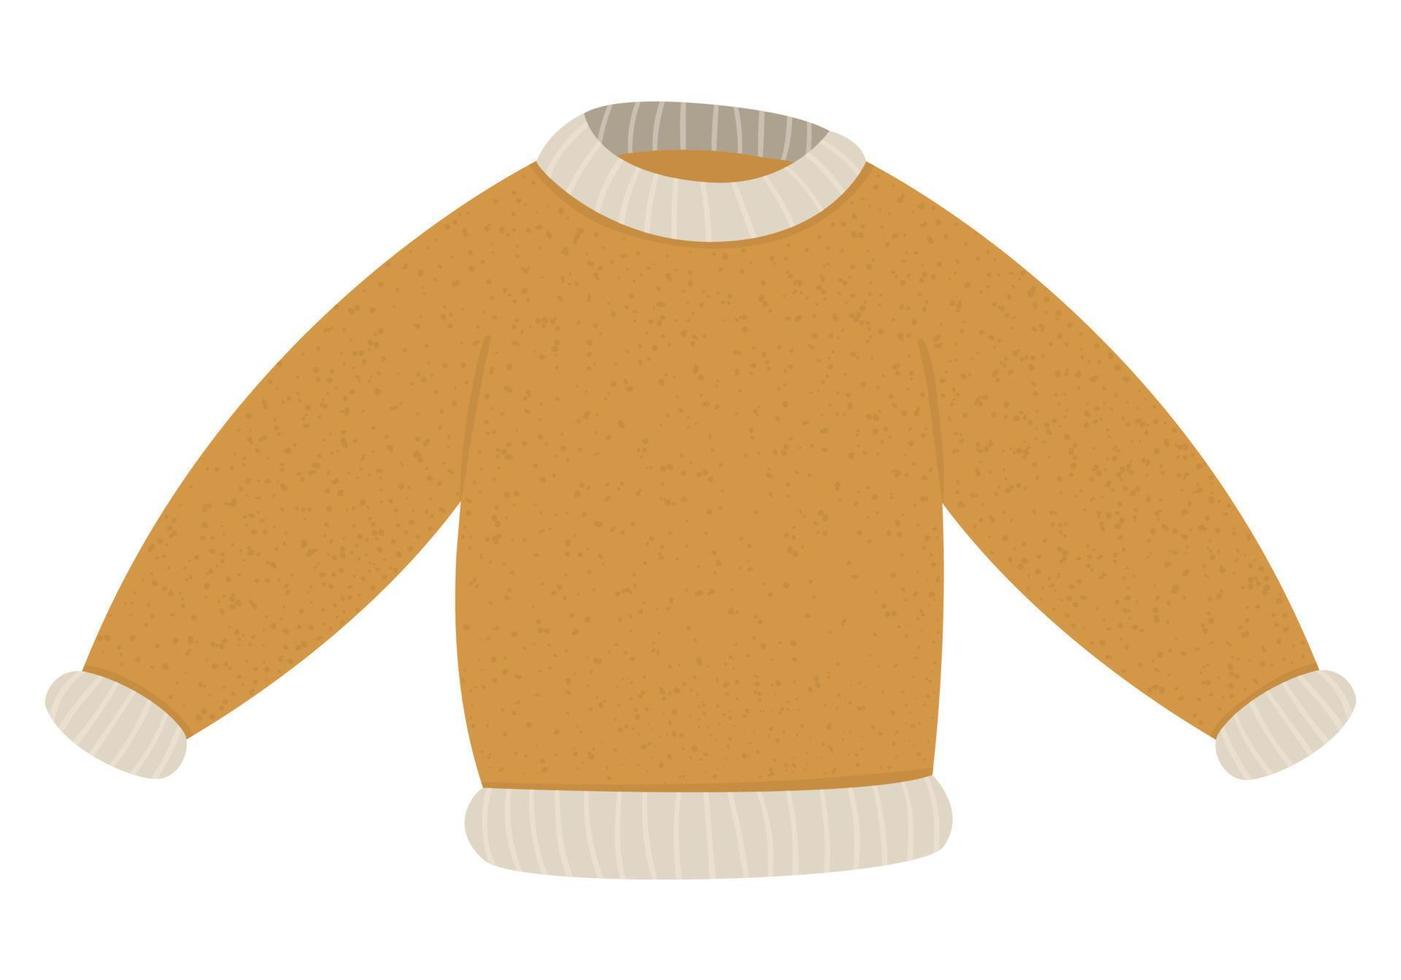 Winterkleidung Abbildung. Vektor-Pullover für kaltes Wetter isoliert auf weißem Hintergrund. flaches Bild eines gemütlichen Pullovers. vektor